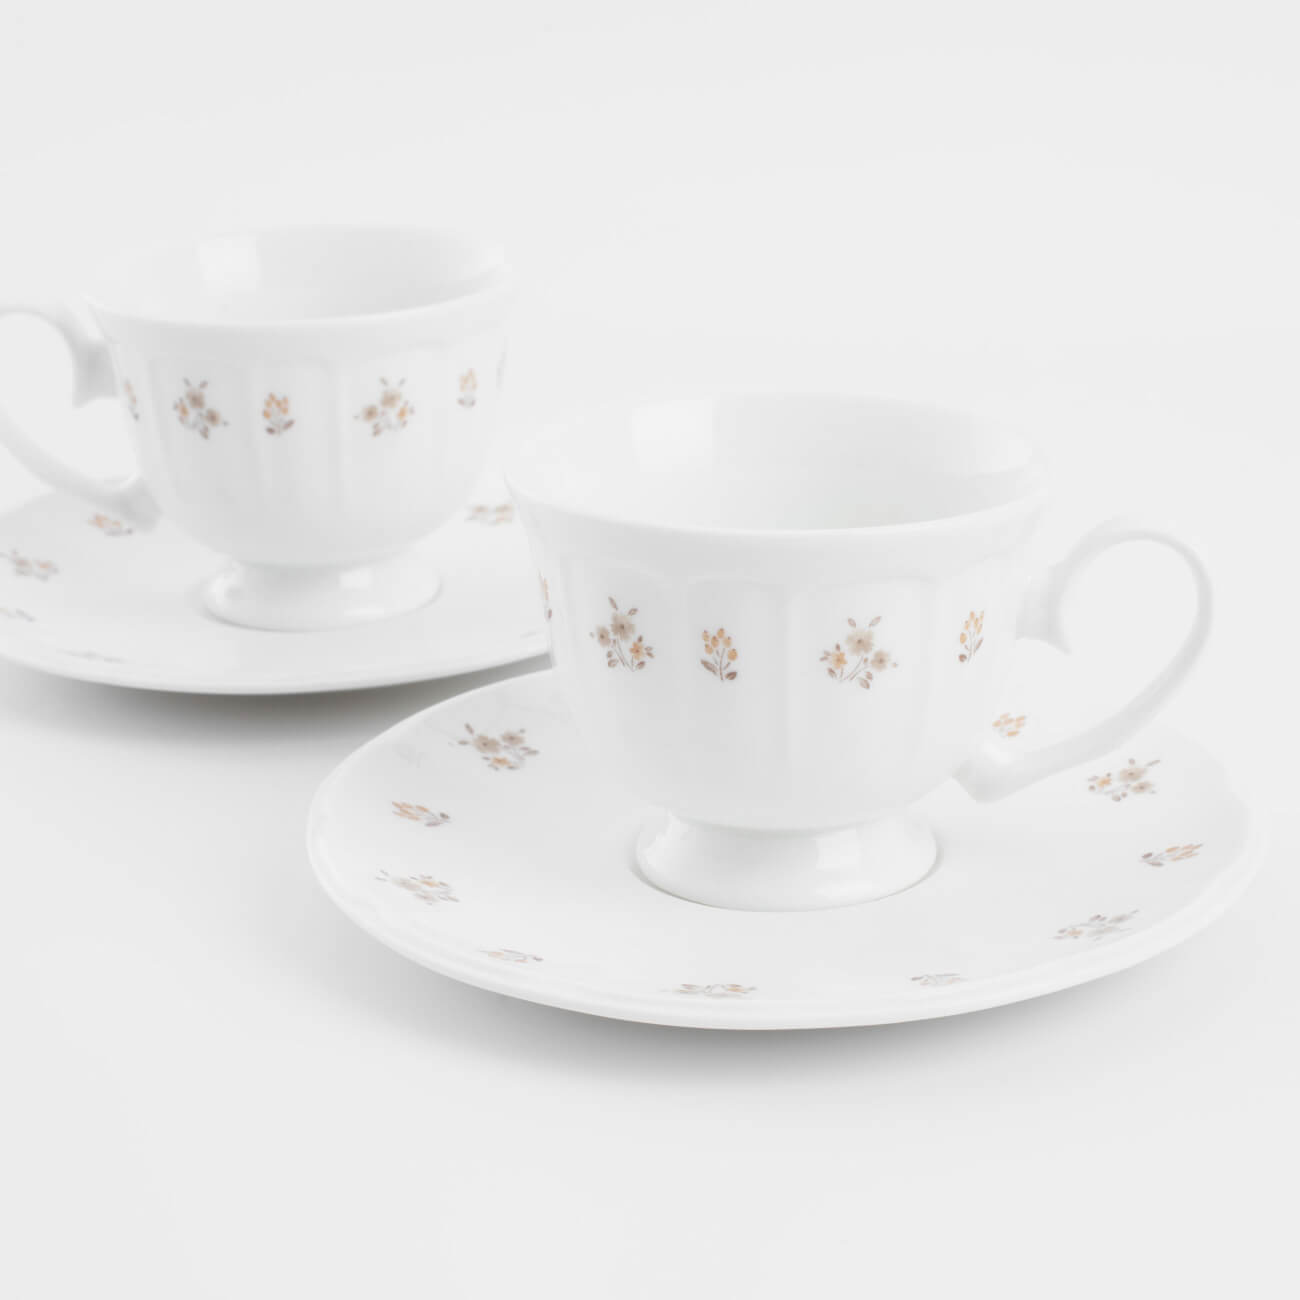 Пара чайная, 2 перс, 4 пр, 180 мл, фарфор N, белая, Винтажные цветы, La flore - фото 1